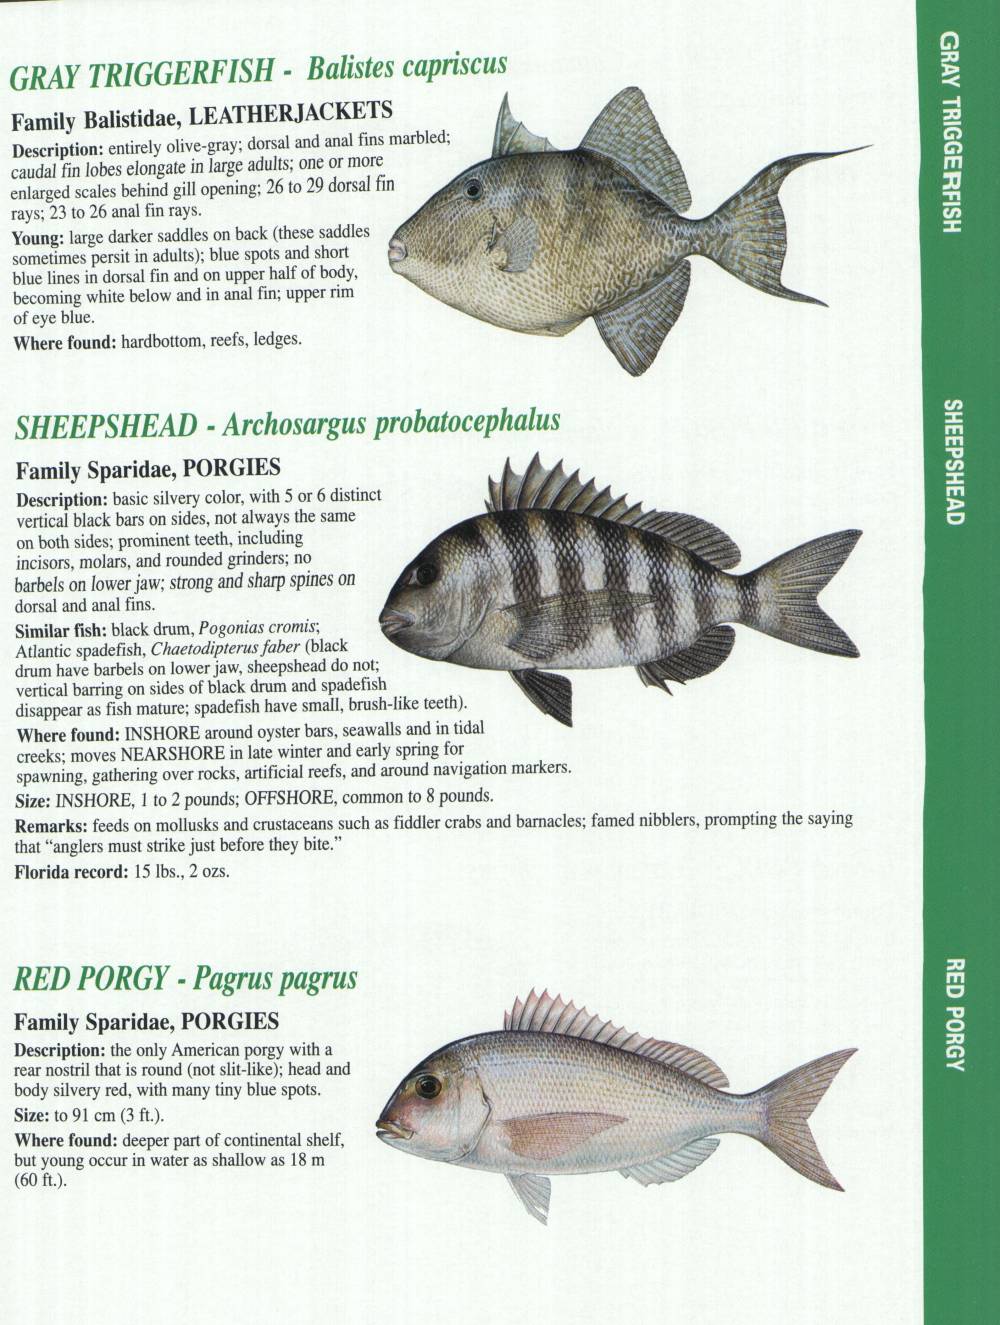 Florida Fish Chart